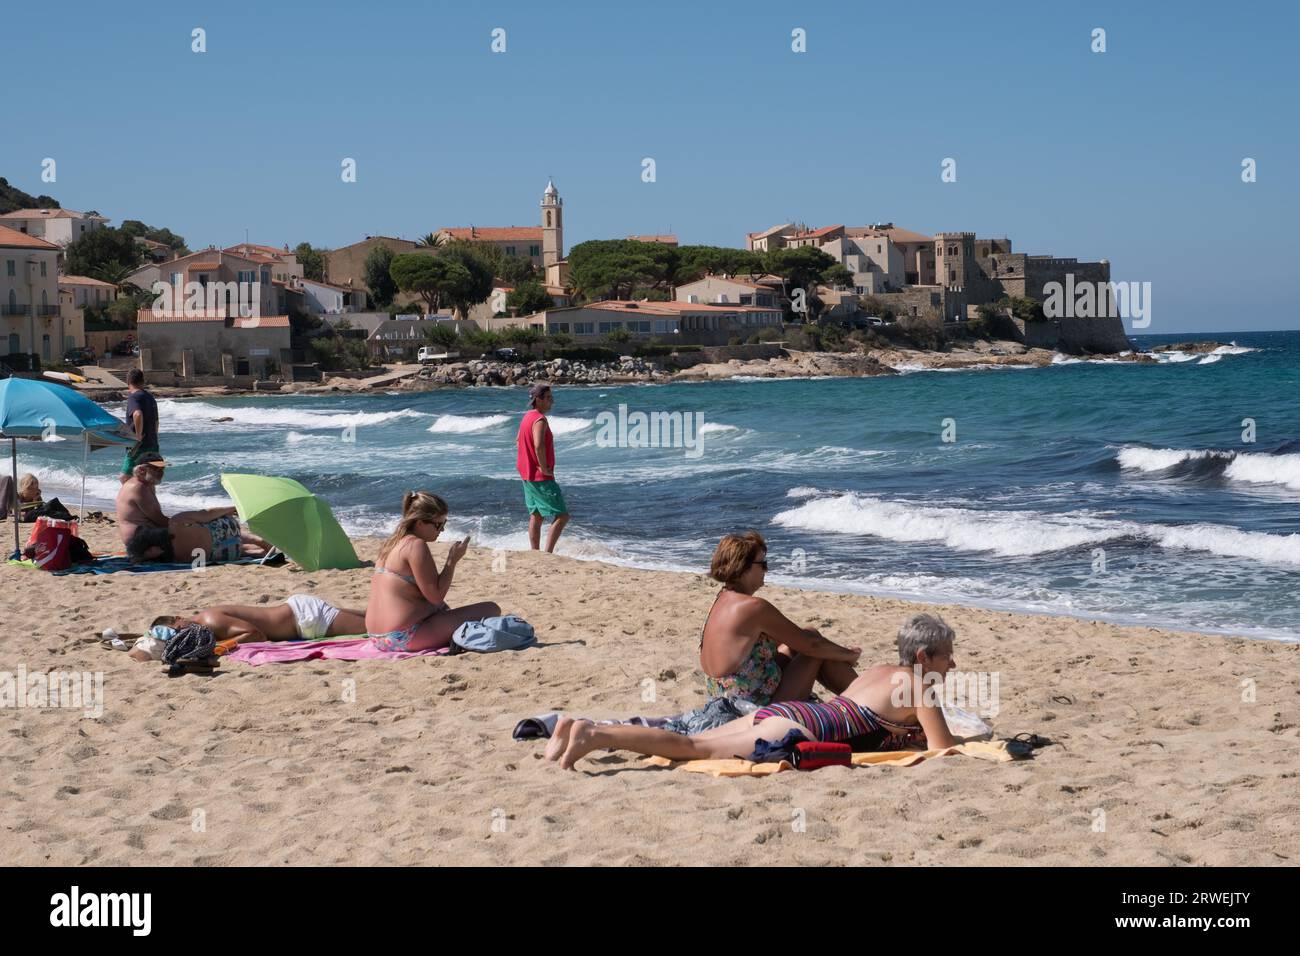 Plage avec vue sur un village de vacances Corse. Prise en Corse, France Banque D'Images